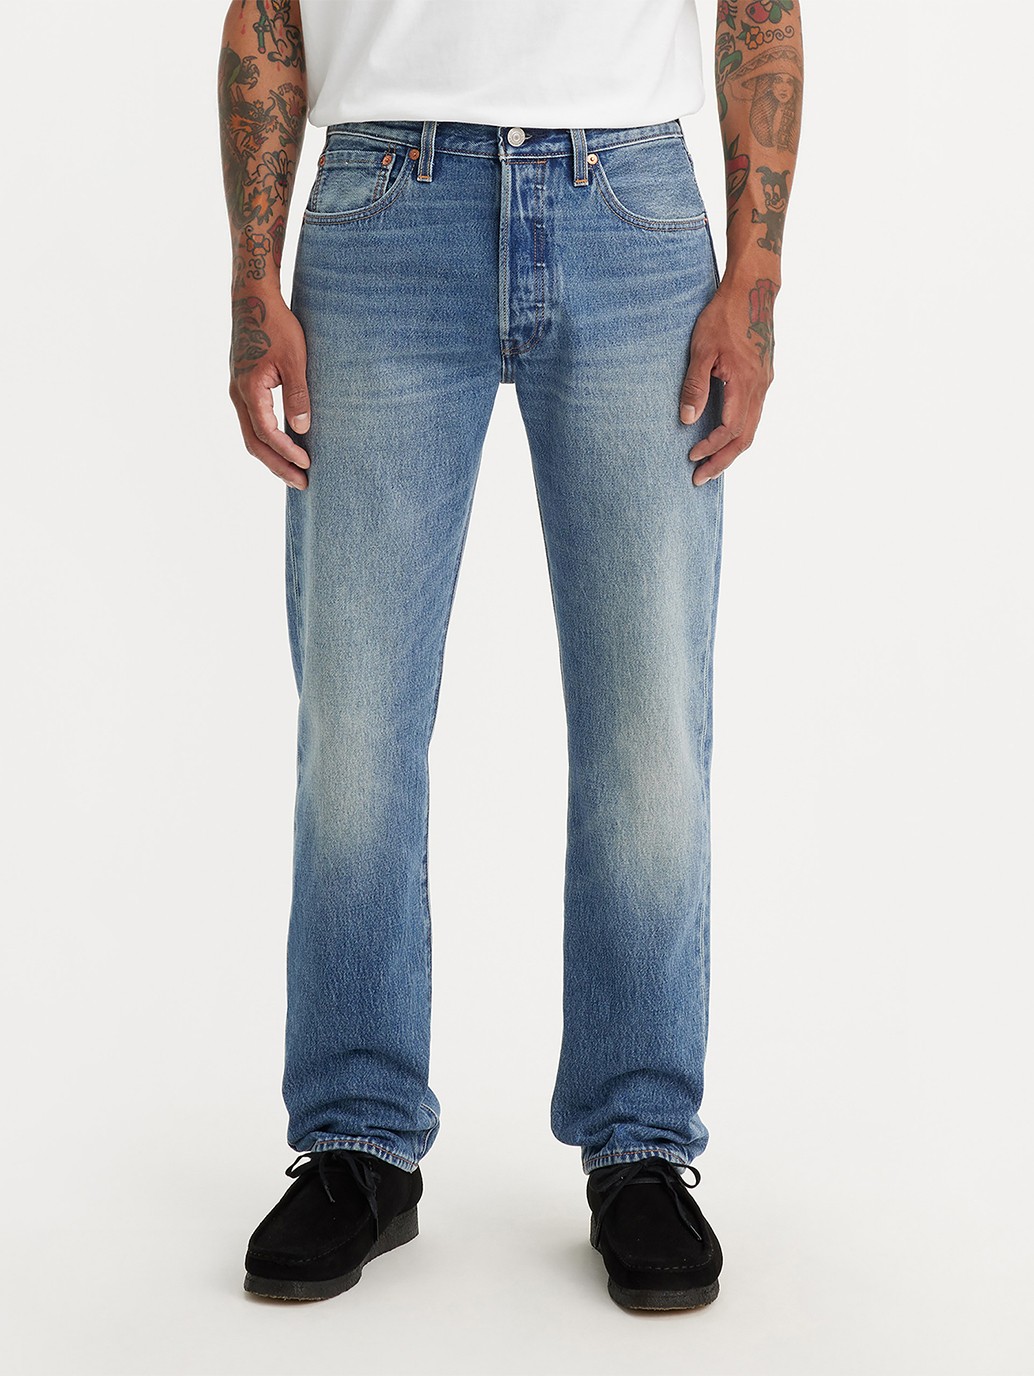 Buy Levi's® Men's 501® Original Transitional Cotton Jeans| Levi's